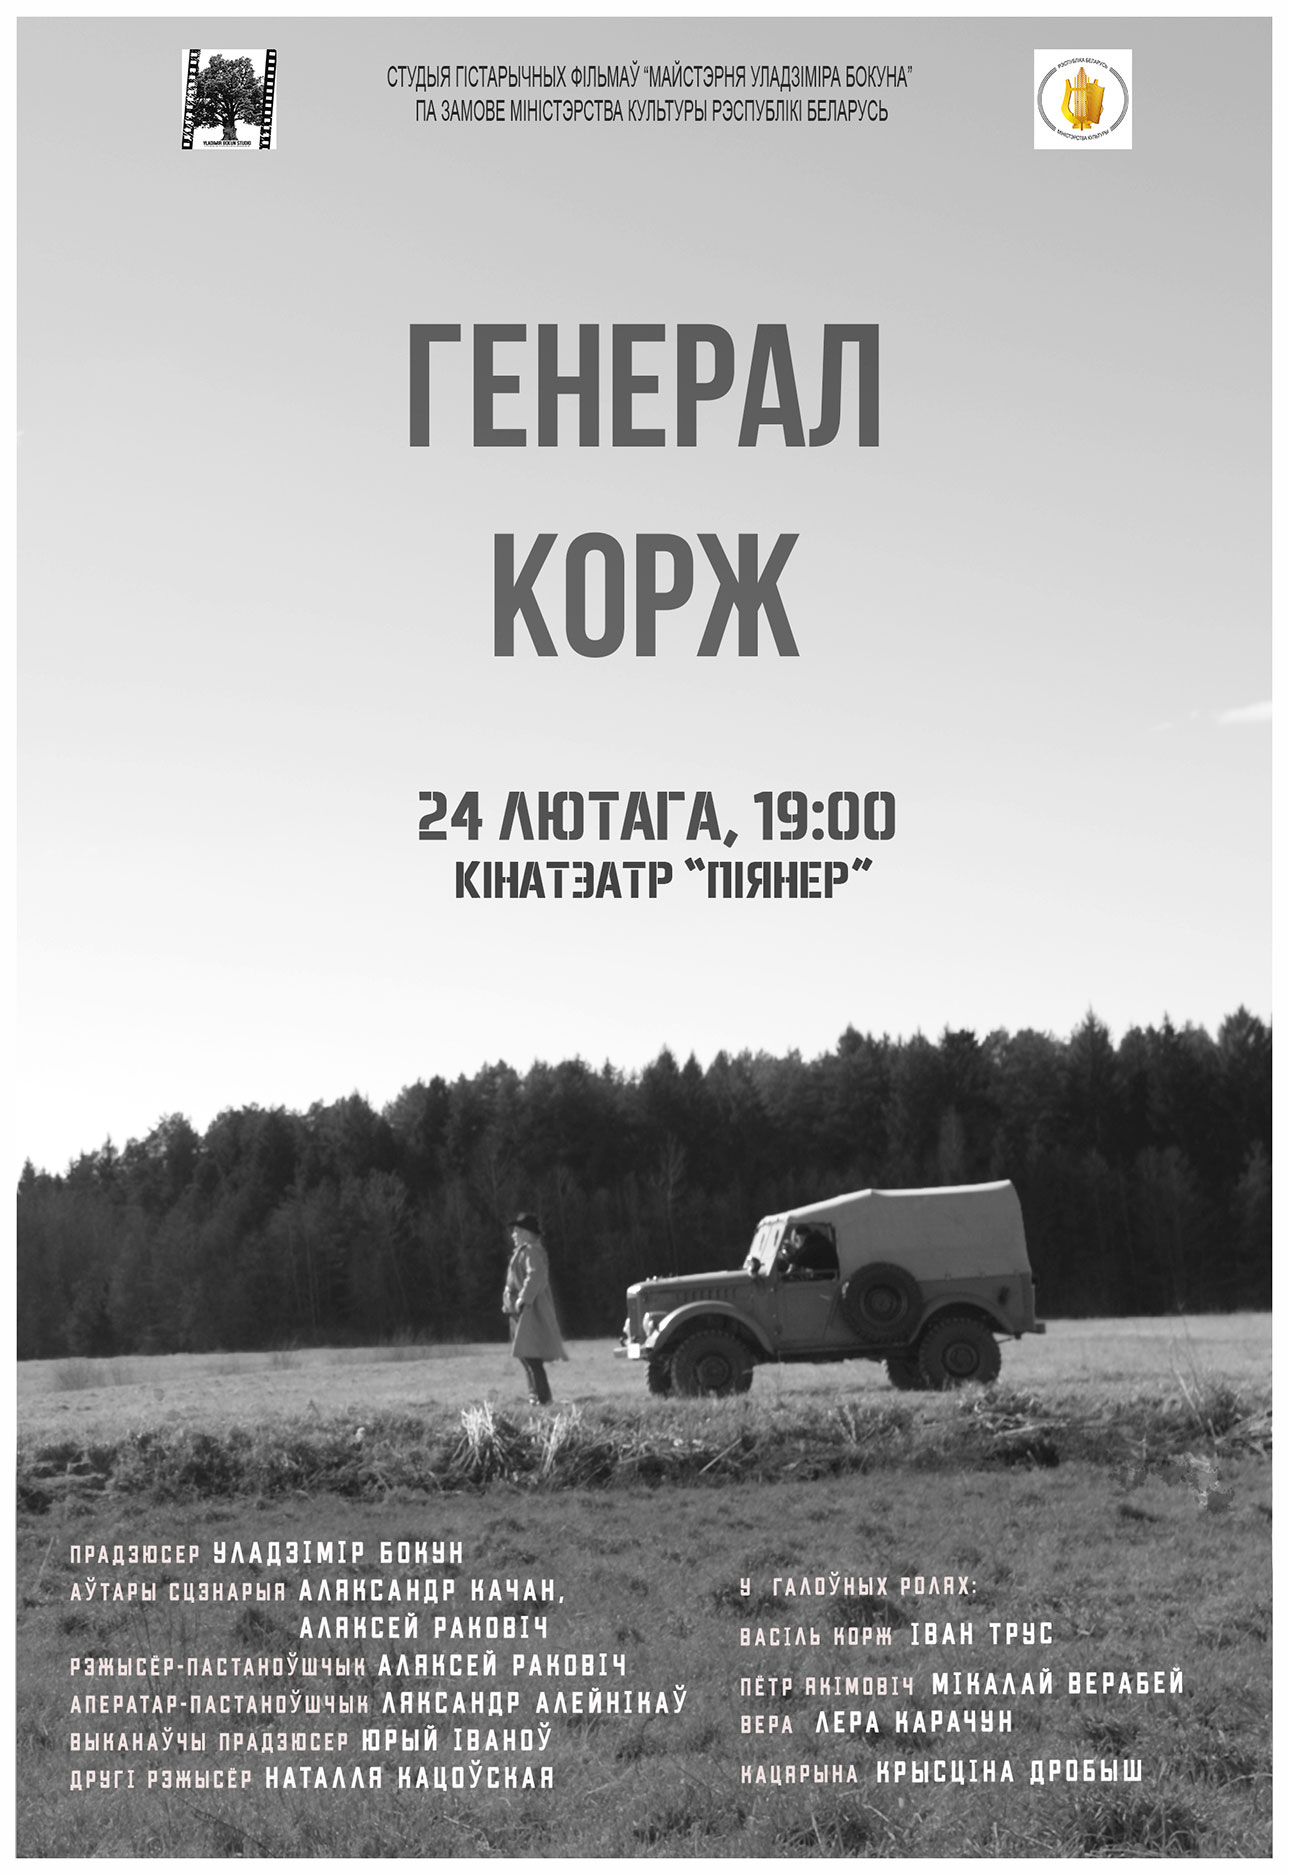 Фото - постер к Кино Генерал Корж на kudapoiti.by